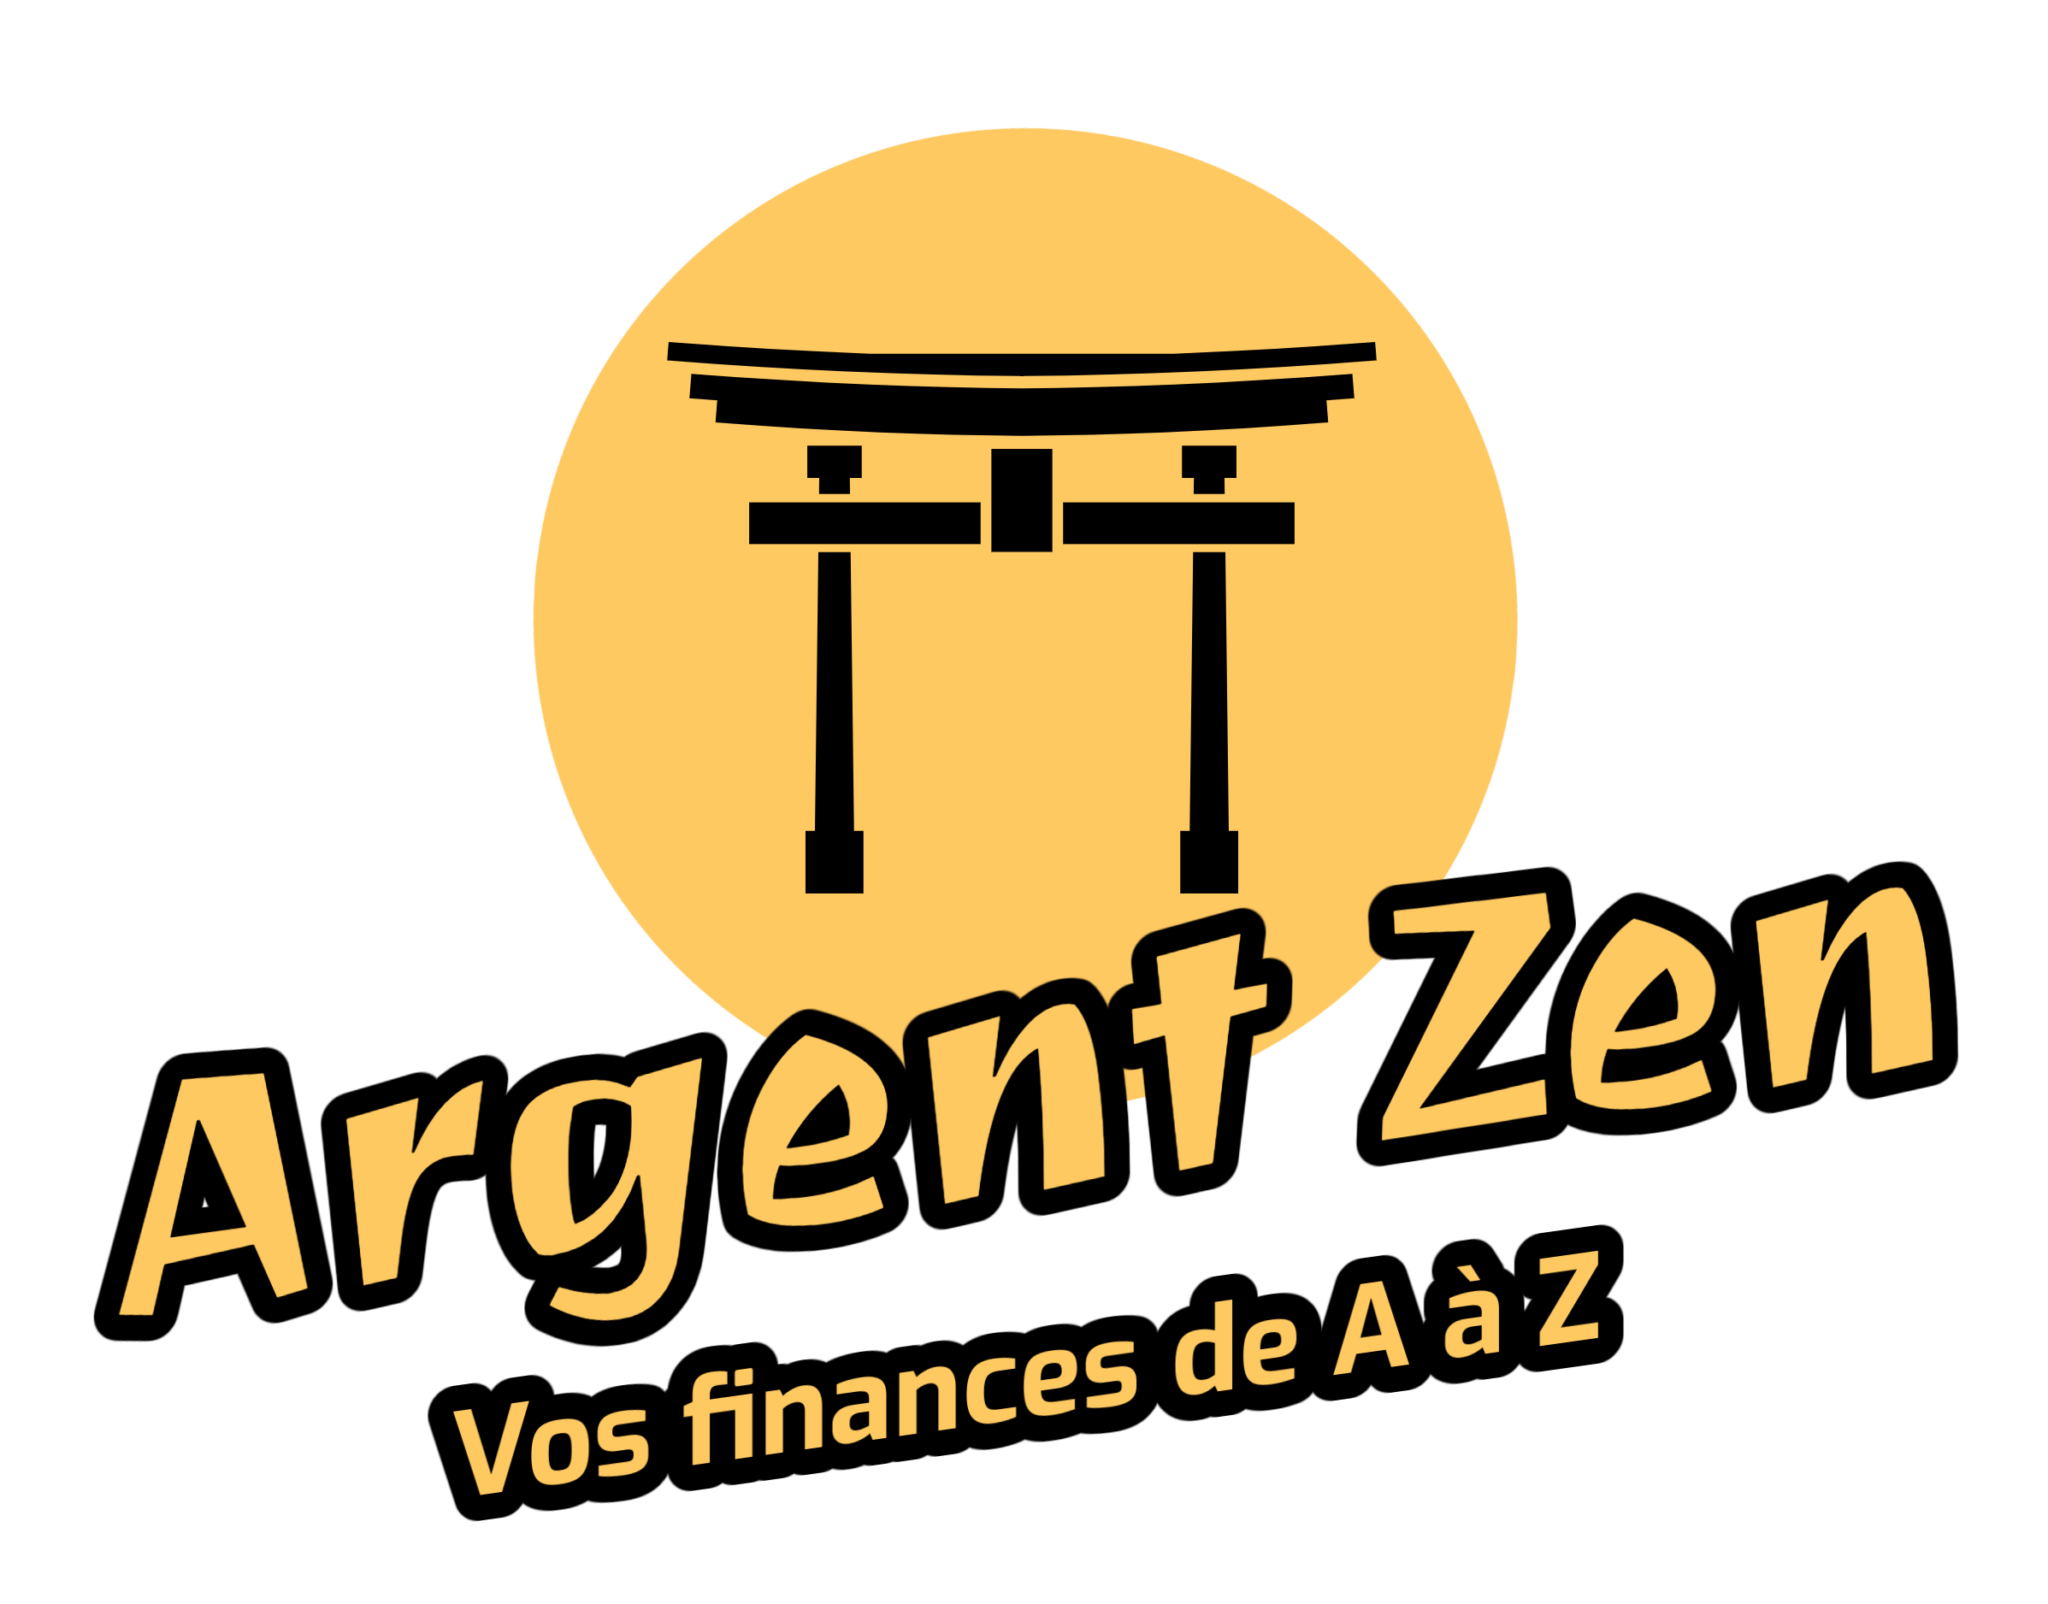 Argent Zen Vos finances de A à Z